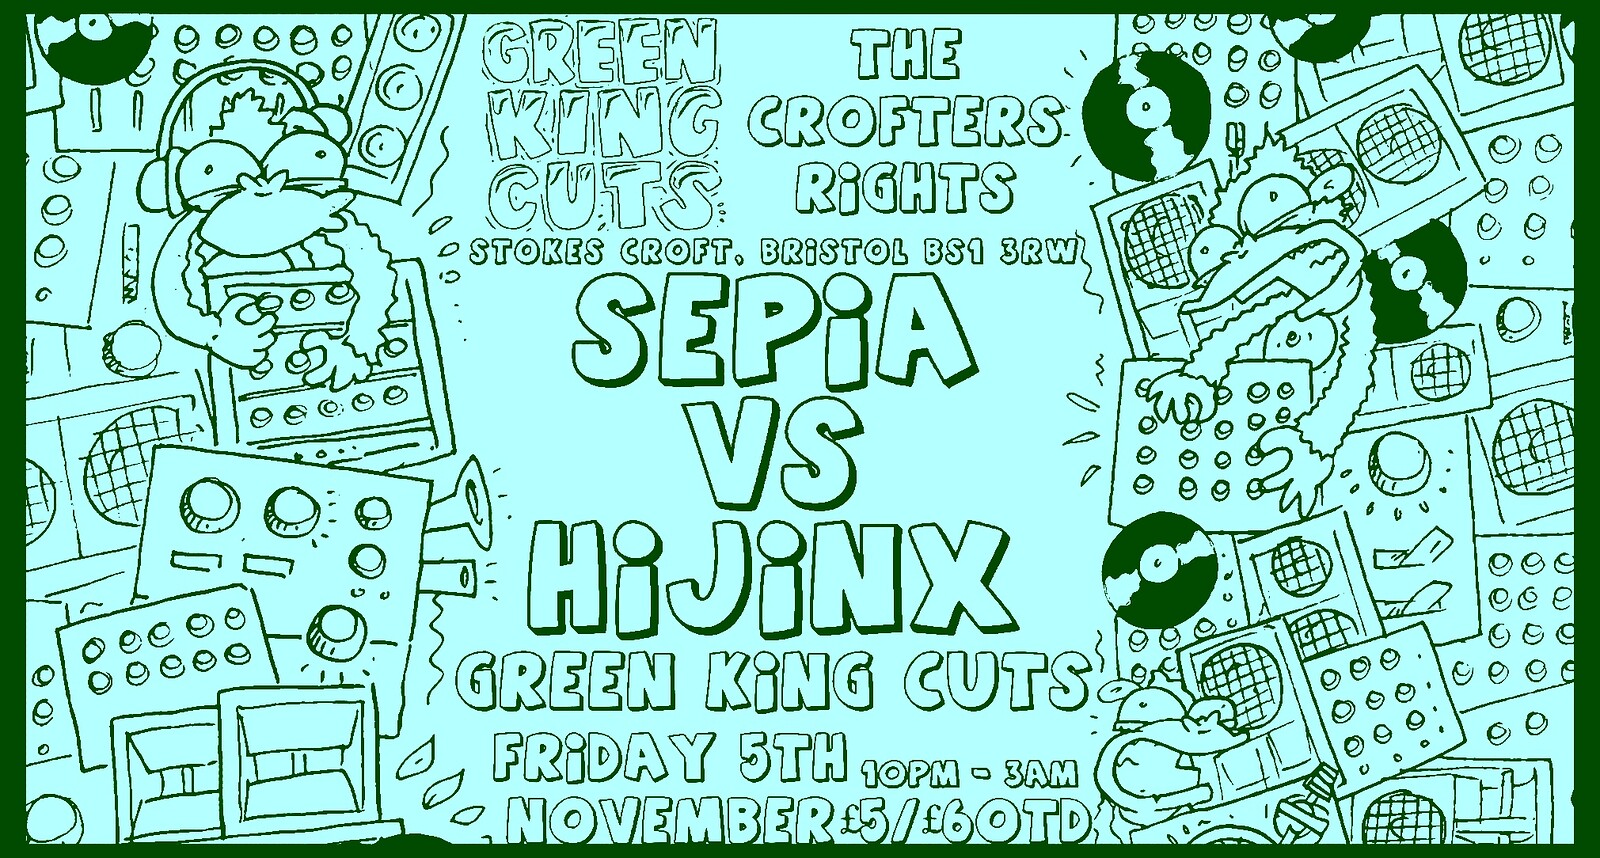 Sepia vs Hijinx + Green King Cuts at Crofters Rights